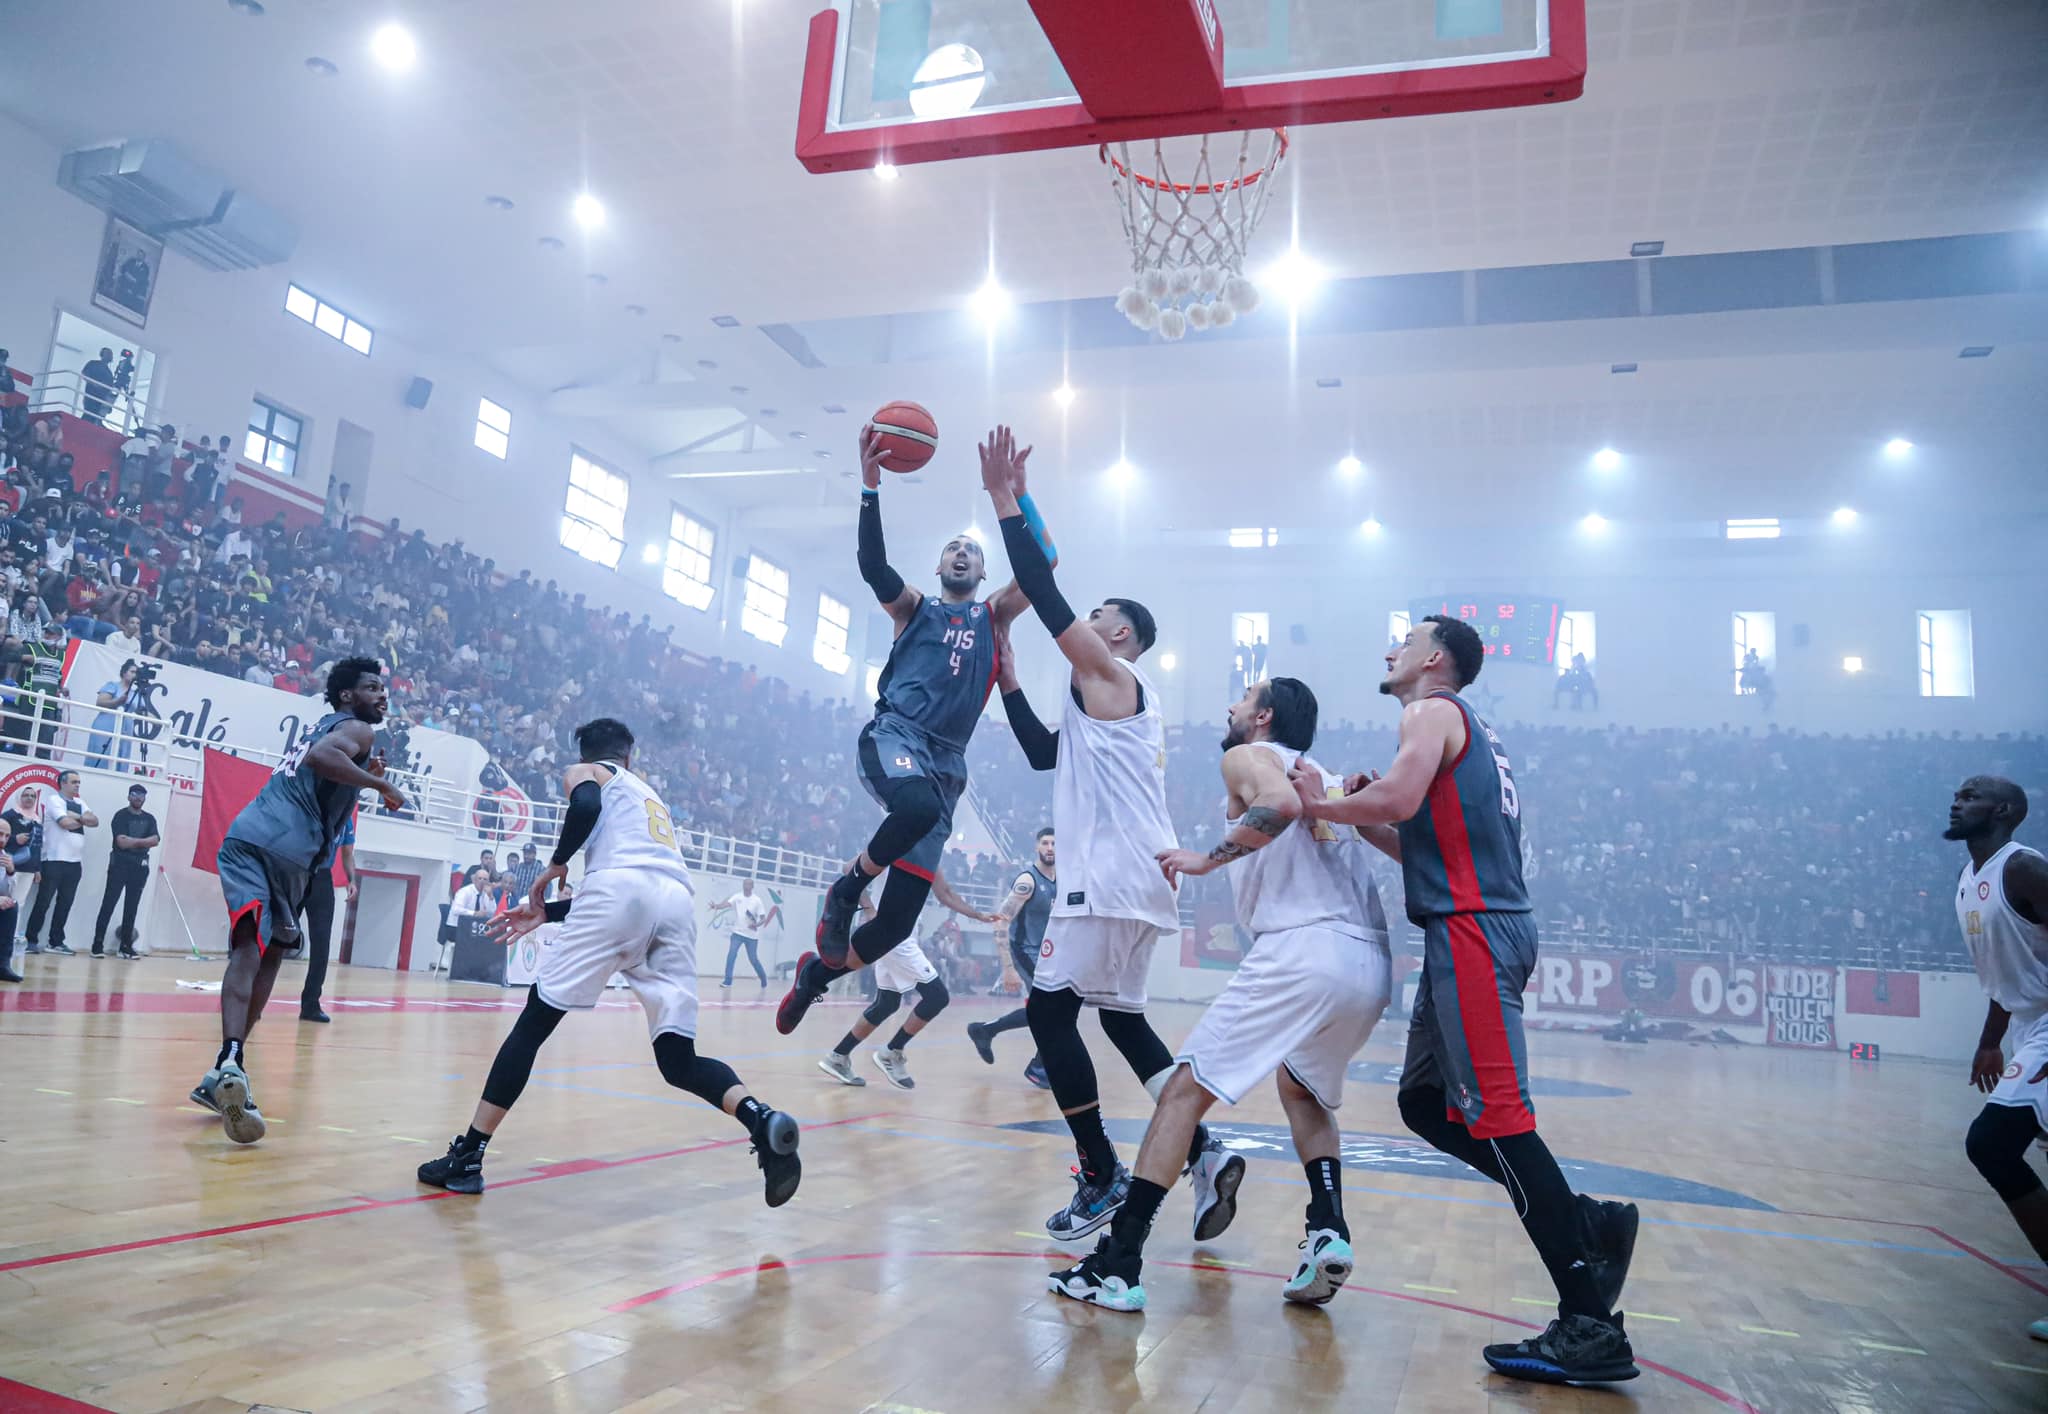 La saison de basketball reprendra ses droits  au Maroc en octobre.